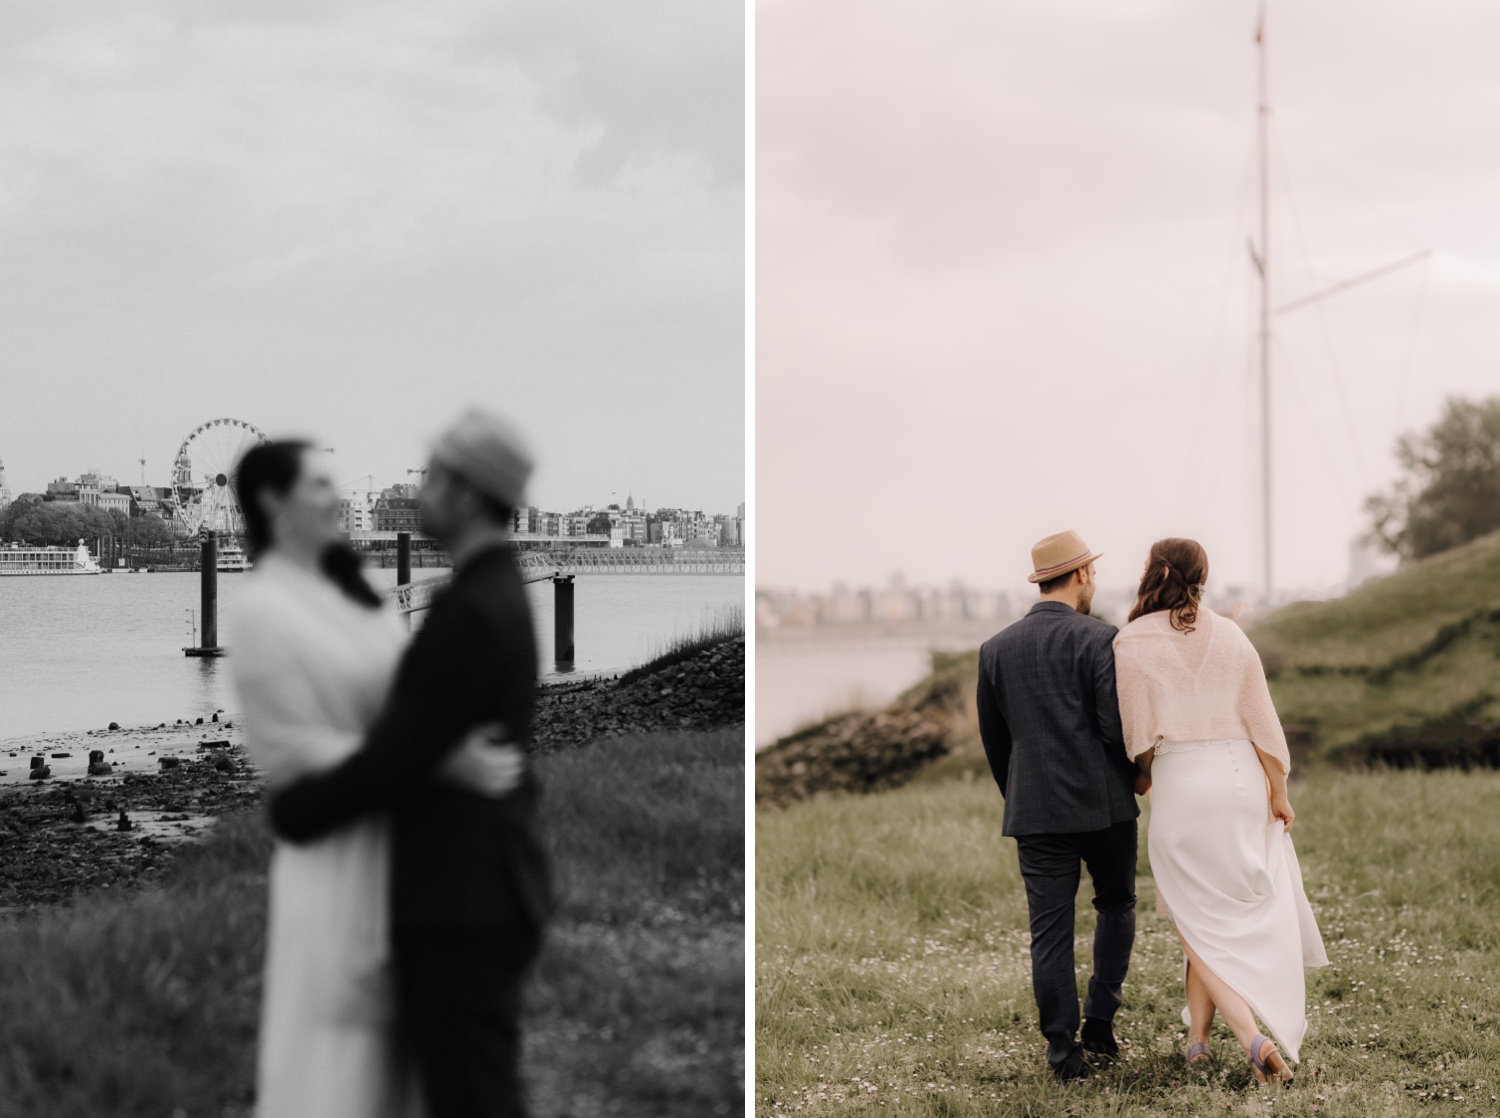 Huwelijksfotograaf Limburg - bruidspaar poseert aan water tijdens fotoshoot